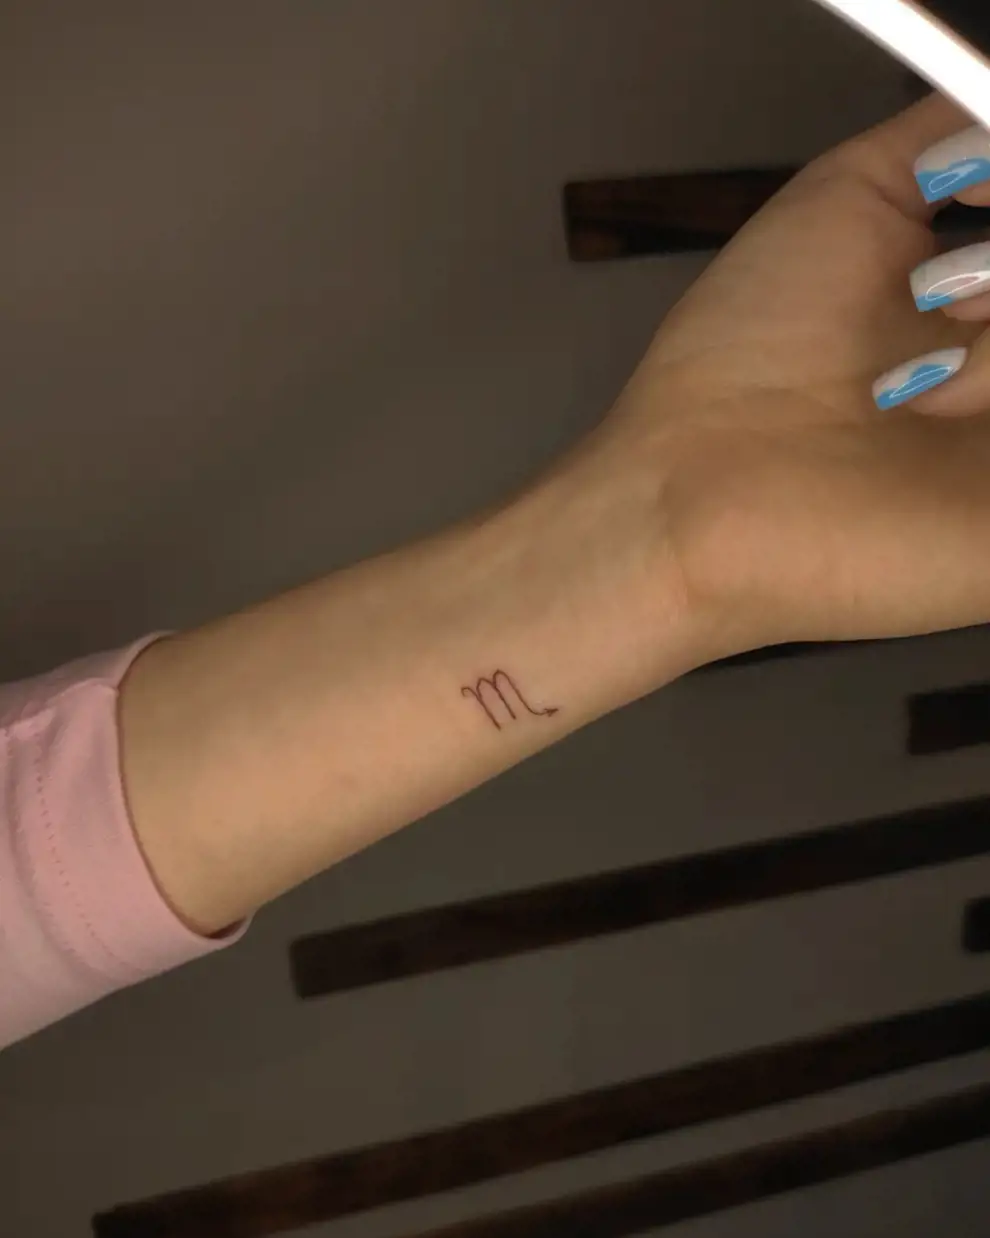 Tatuaje Arbol de la Vida: Símbolo de Vida, Esperanza y Conexión